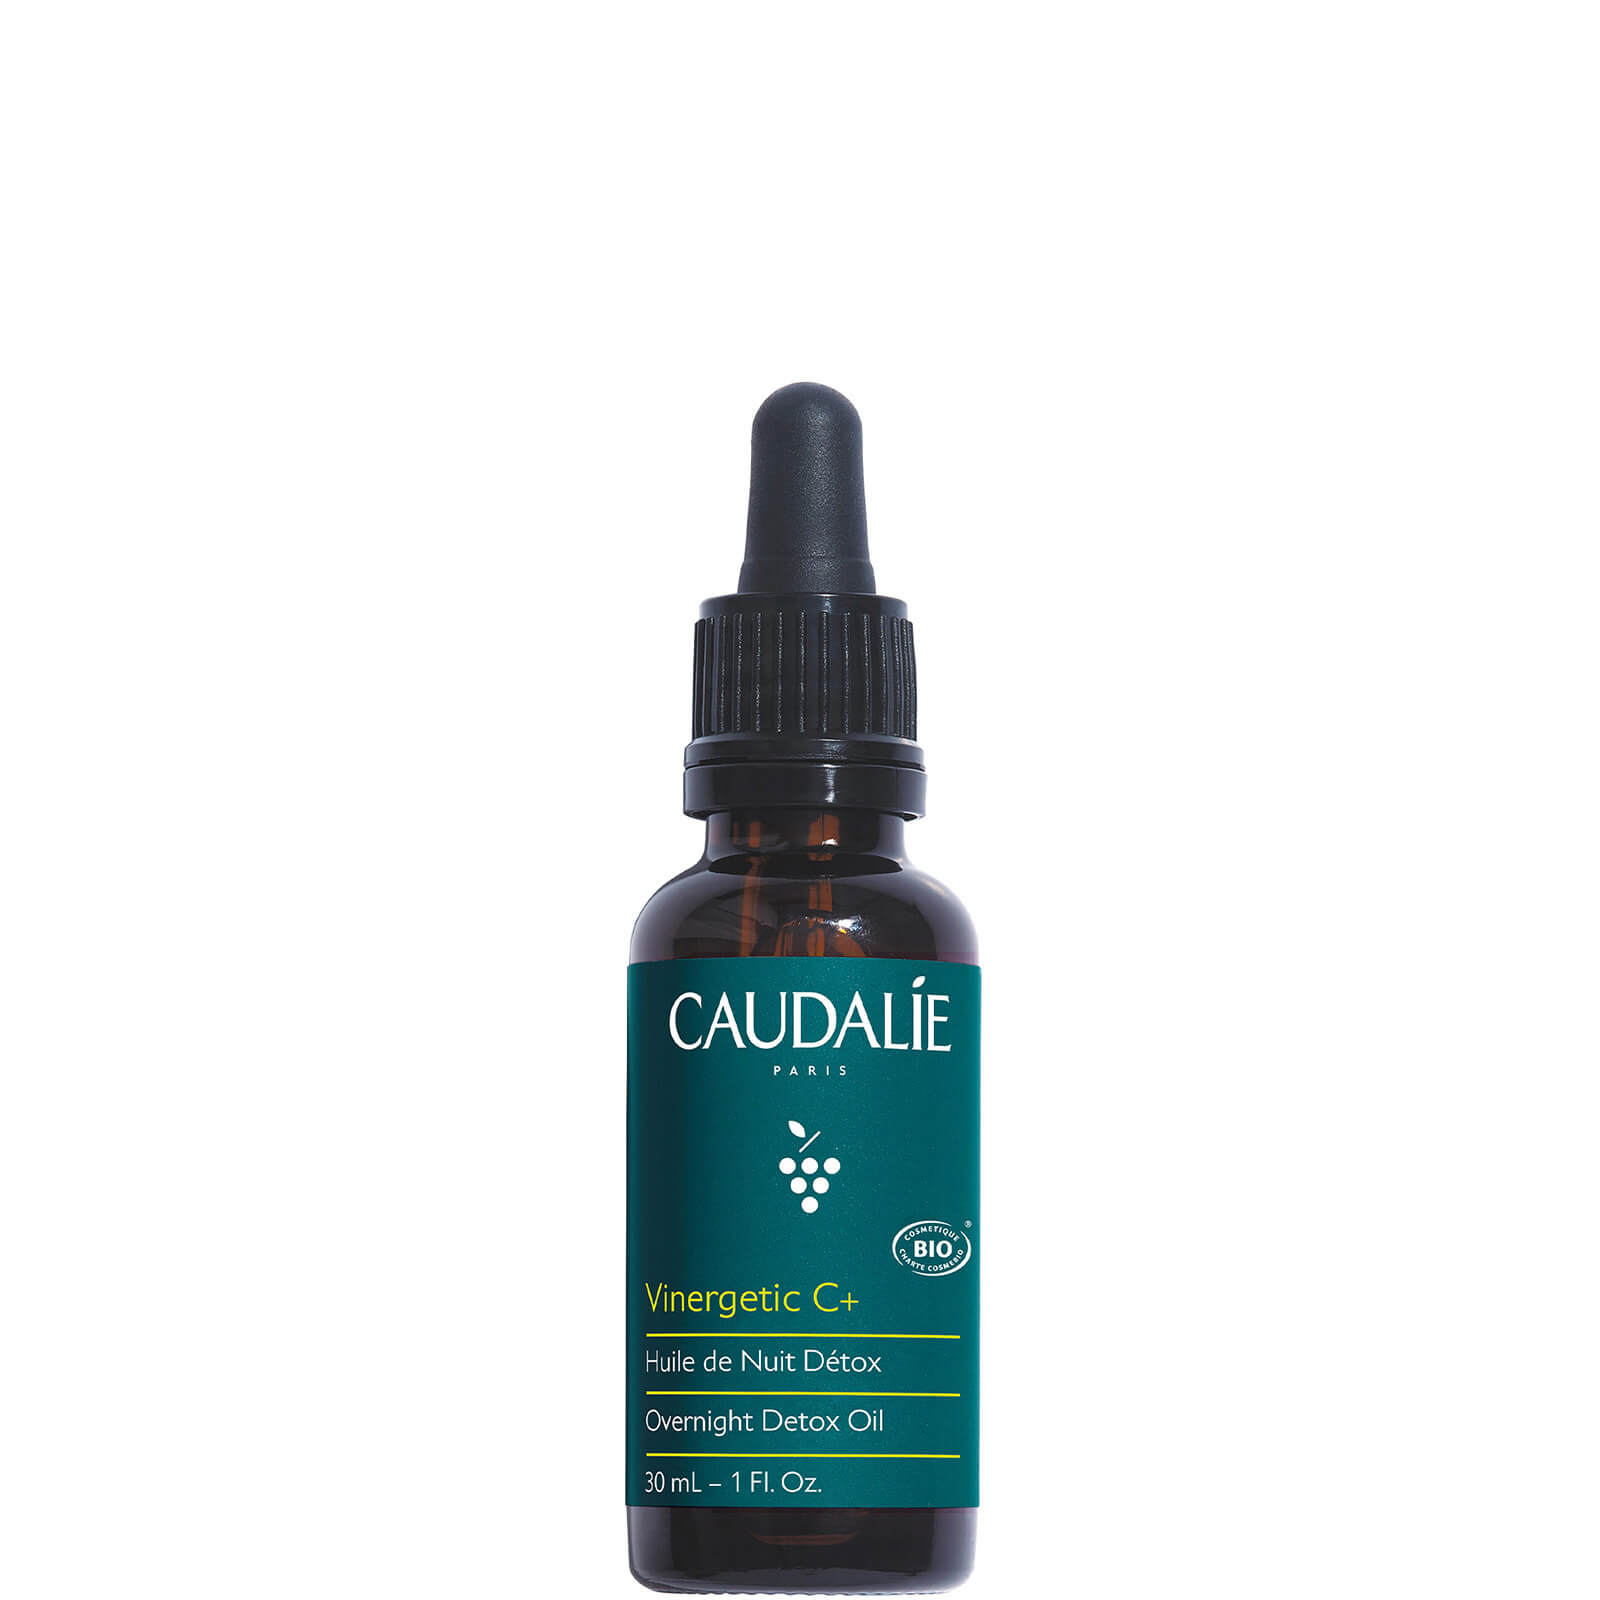 Caudalie Vinergetic C+overnight Detox Oil 30ml